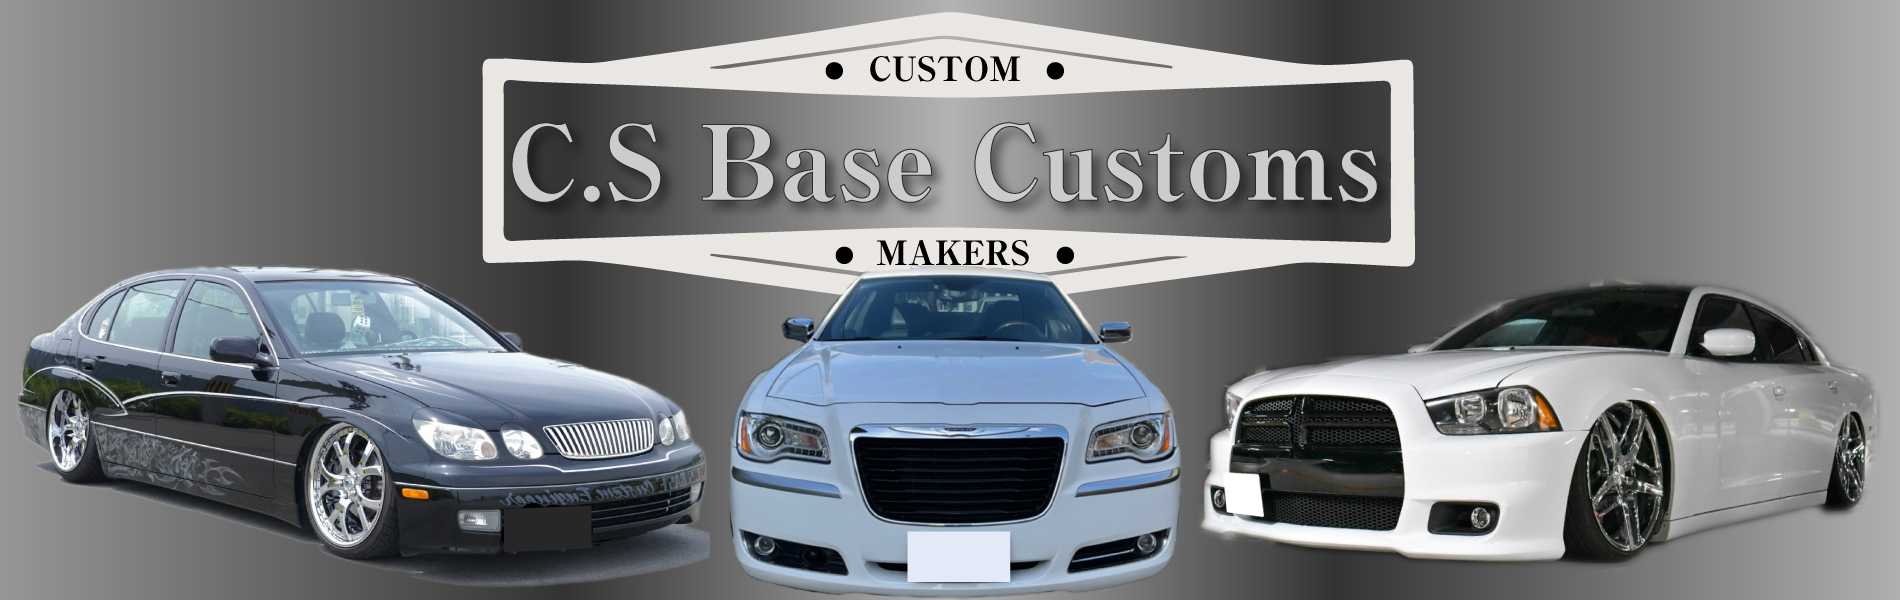 C S Base Customs 電装系のカスタムに強い車屋です 国産車から外車まで幅広く施工します